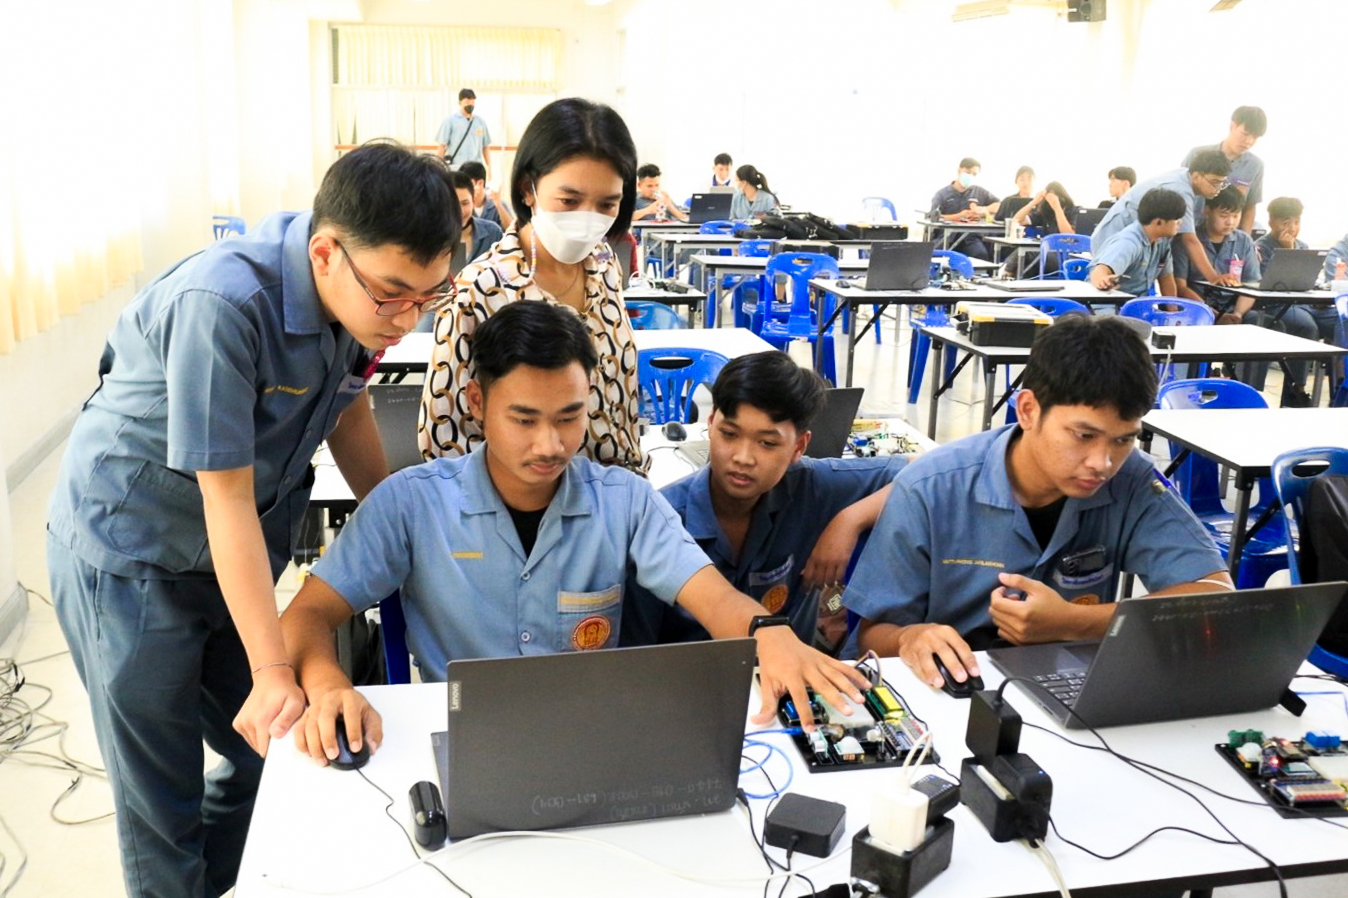 เนคเทค สวทช. ร่วม EECi พัฒนา ‘I2-Starter Kit’ ชุดอุปกรณ์เรียนรู้ระบบ IIoT มุ่งสนับสนุนเยาวชนไทยเข้าถึงอุปกรณ์พัฒนาทักษะอุตสาหกรรม 4.0 อย่างทั่วถึง